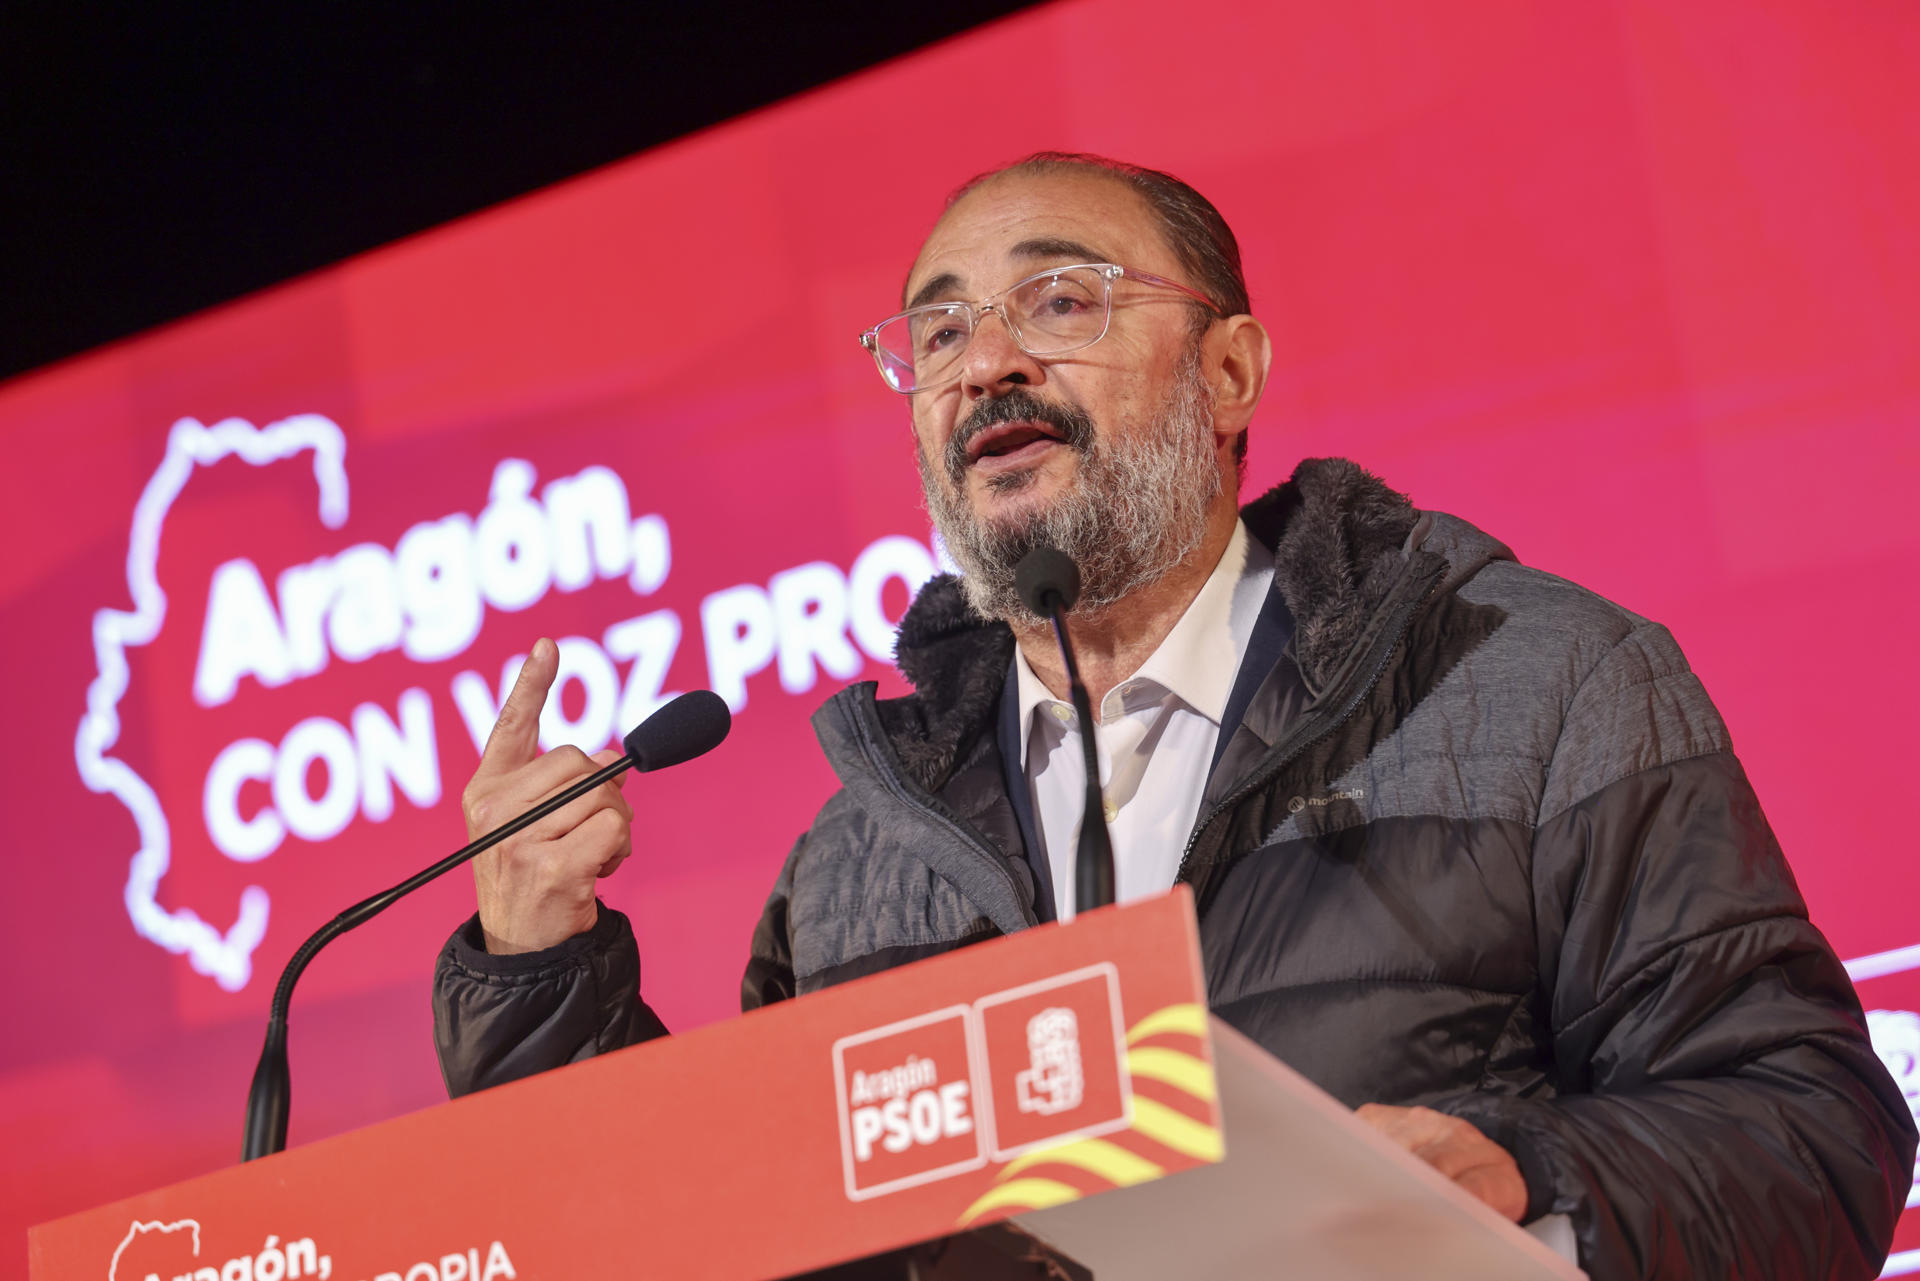 El presidente en funciones de Aragón y secretario general de PSOE aragonés, Javier Lambán, en una imagen de archivo.EFE/ Toni Galán